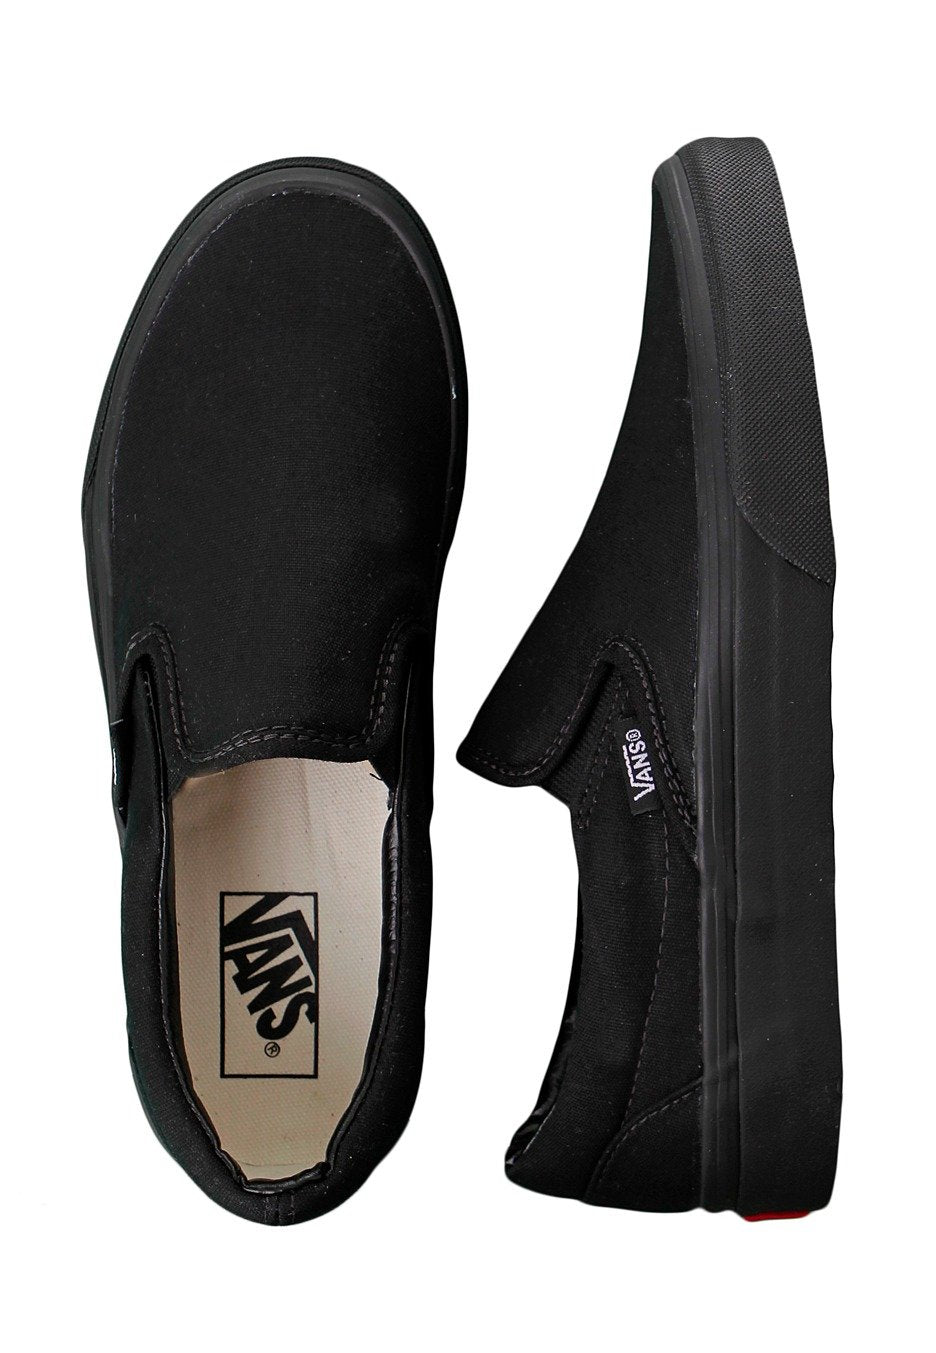 Vans - Classic Slip-On Black/Black - Girl Shoes